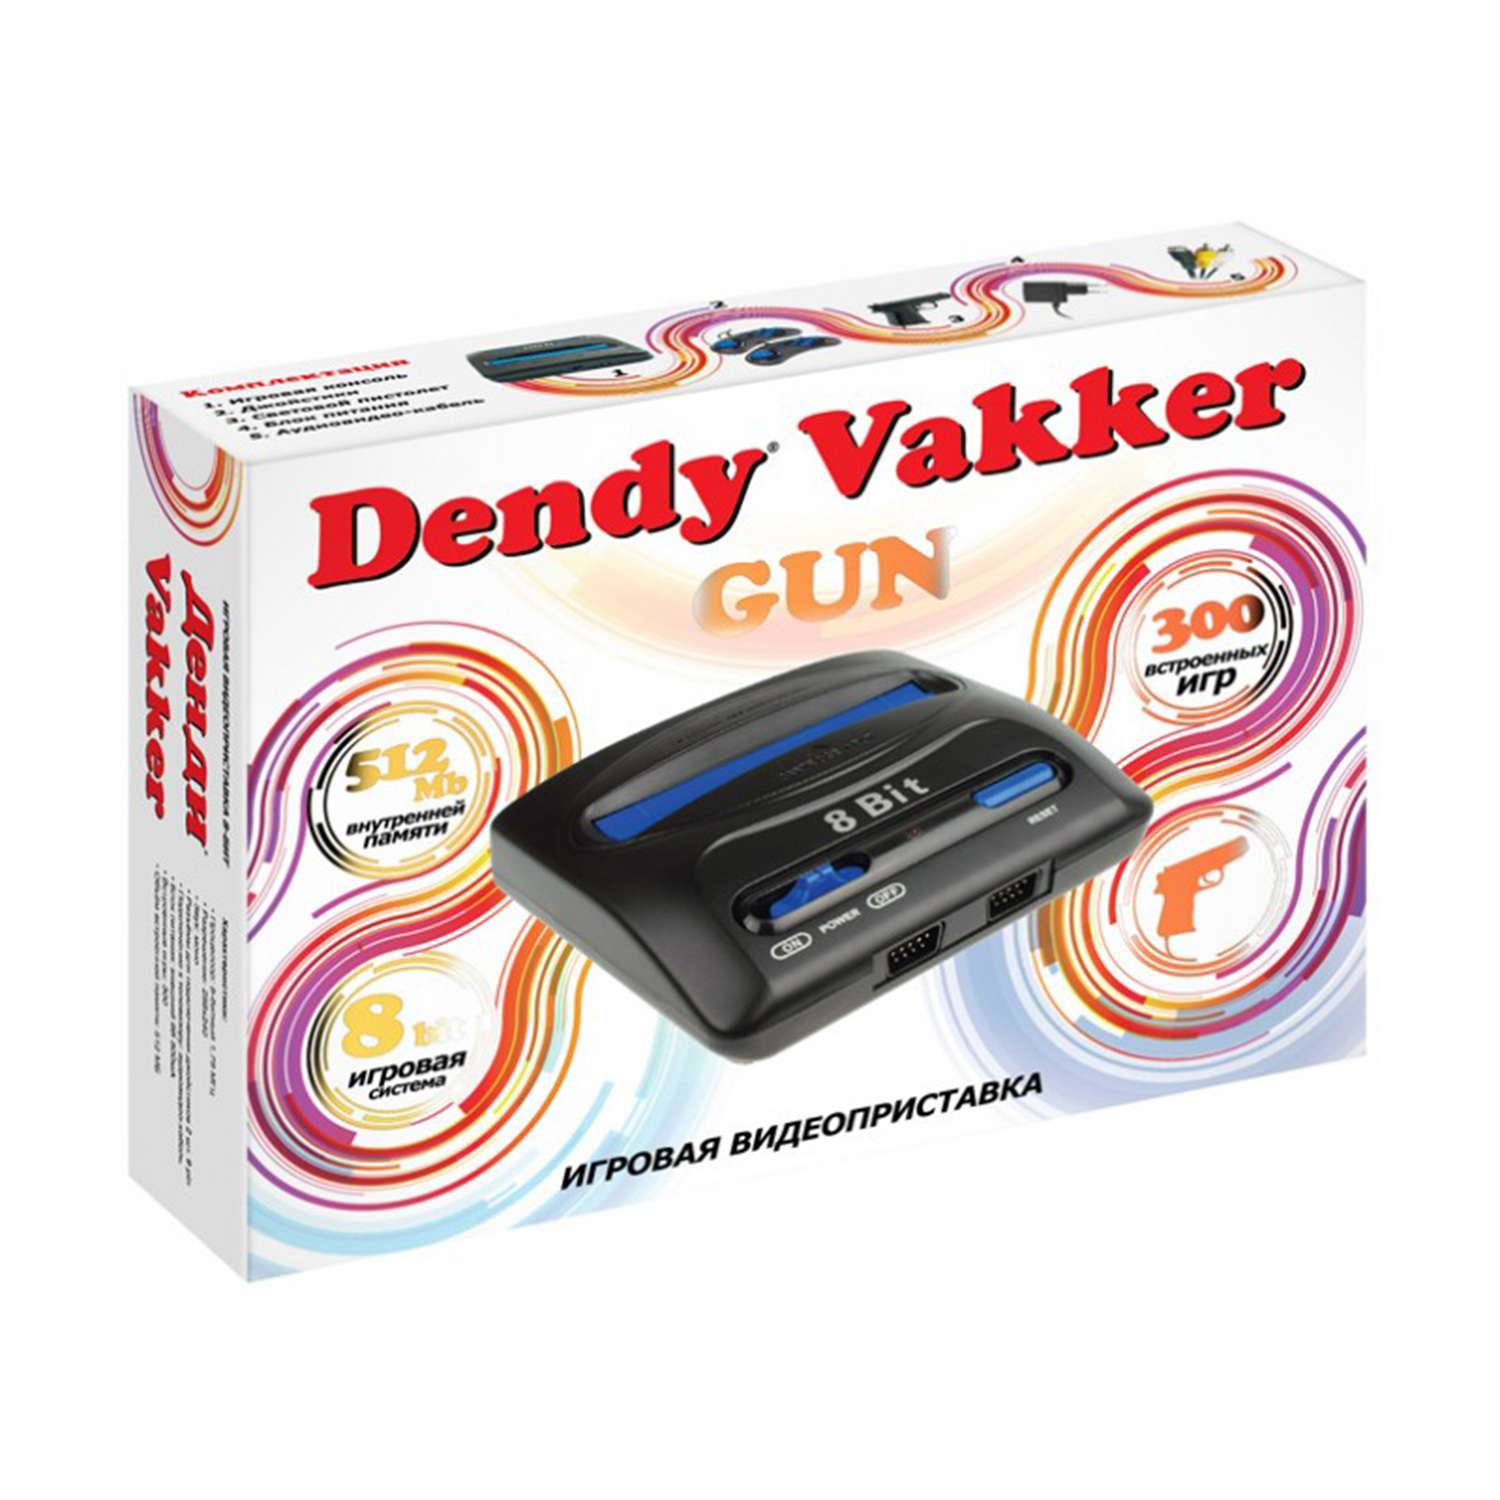 Приставка Dendy игровая Vakker 300 игр и световой пистолет DV-G300 - фото 2